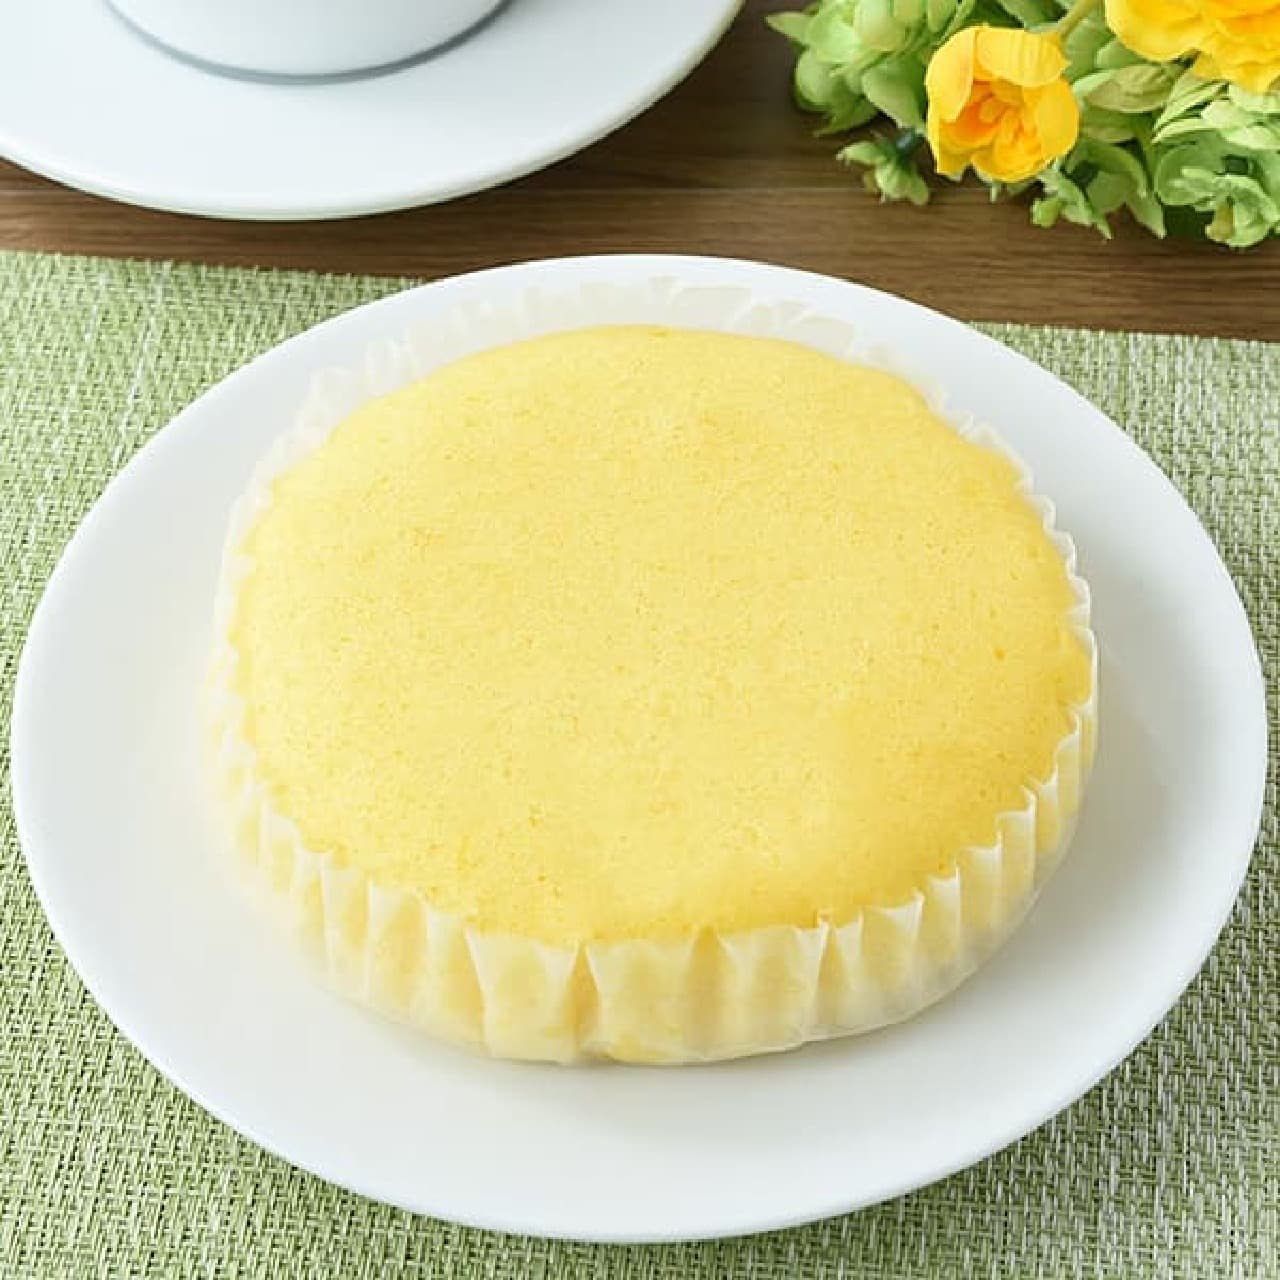 FamilyMart "Lemon-scented soft steamed cake